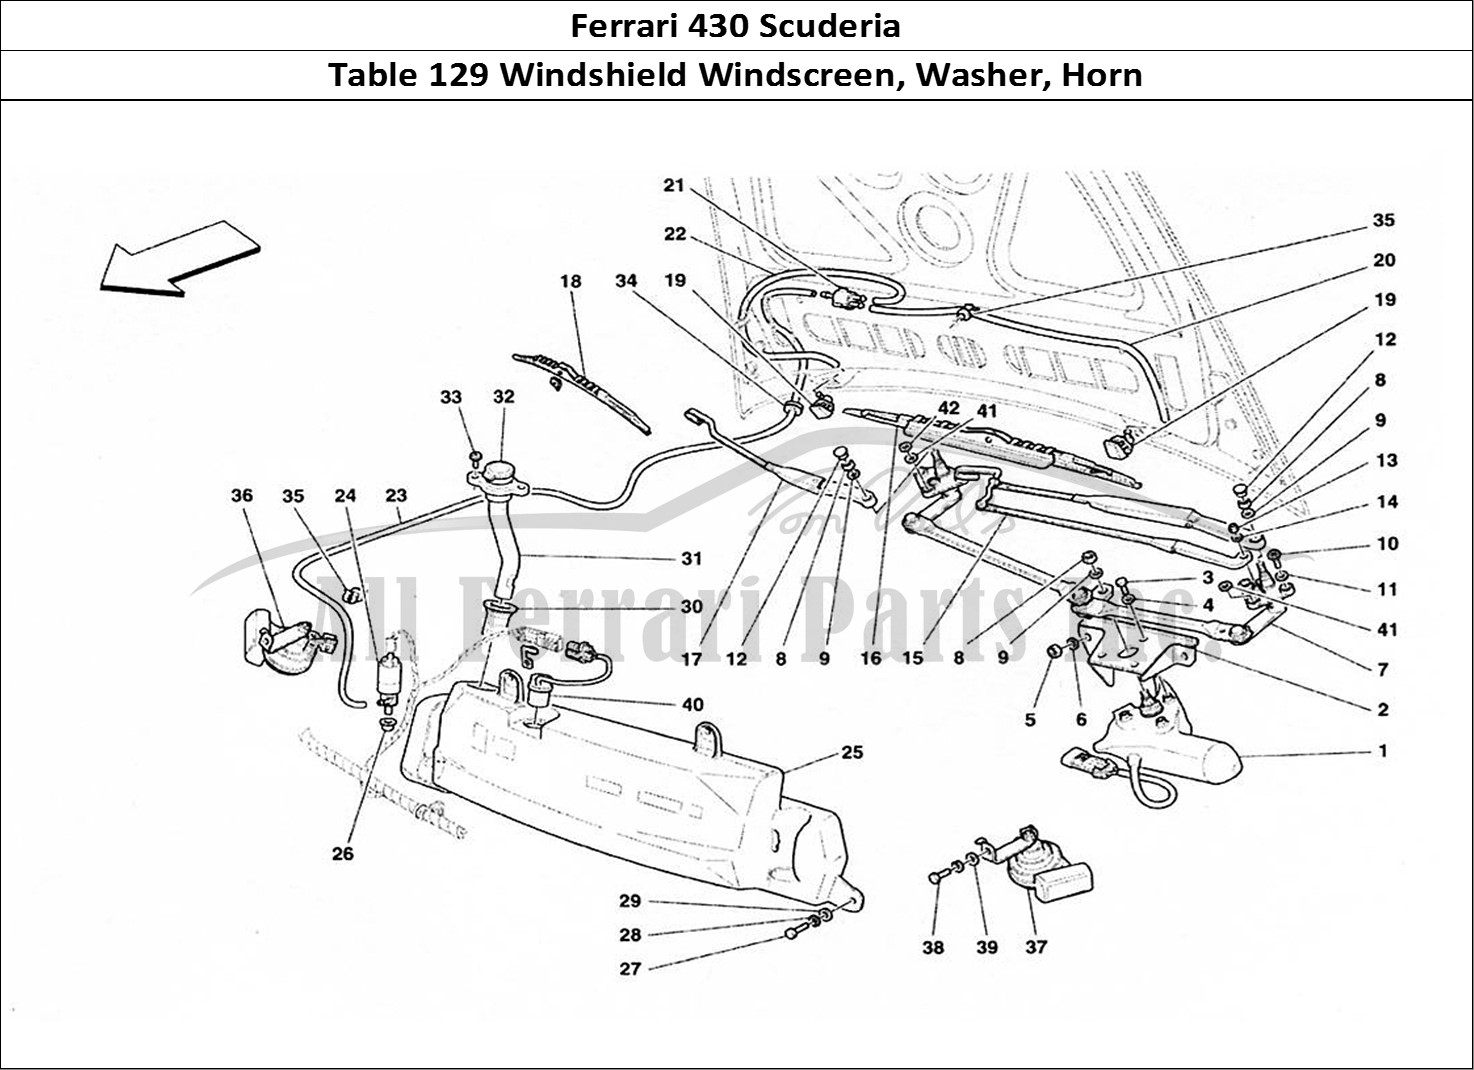 Ferrari Parts Ferrari 430 Scuderia Page 129 Windshield, Glass Washer